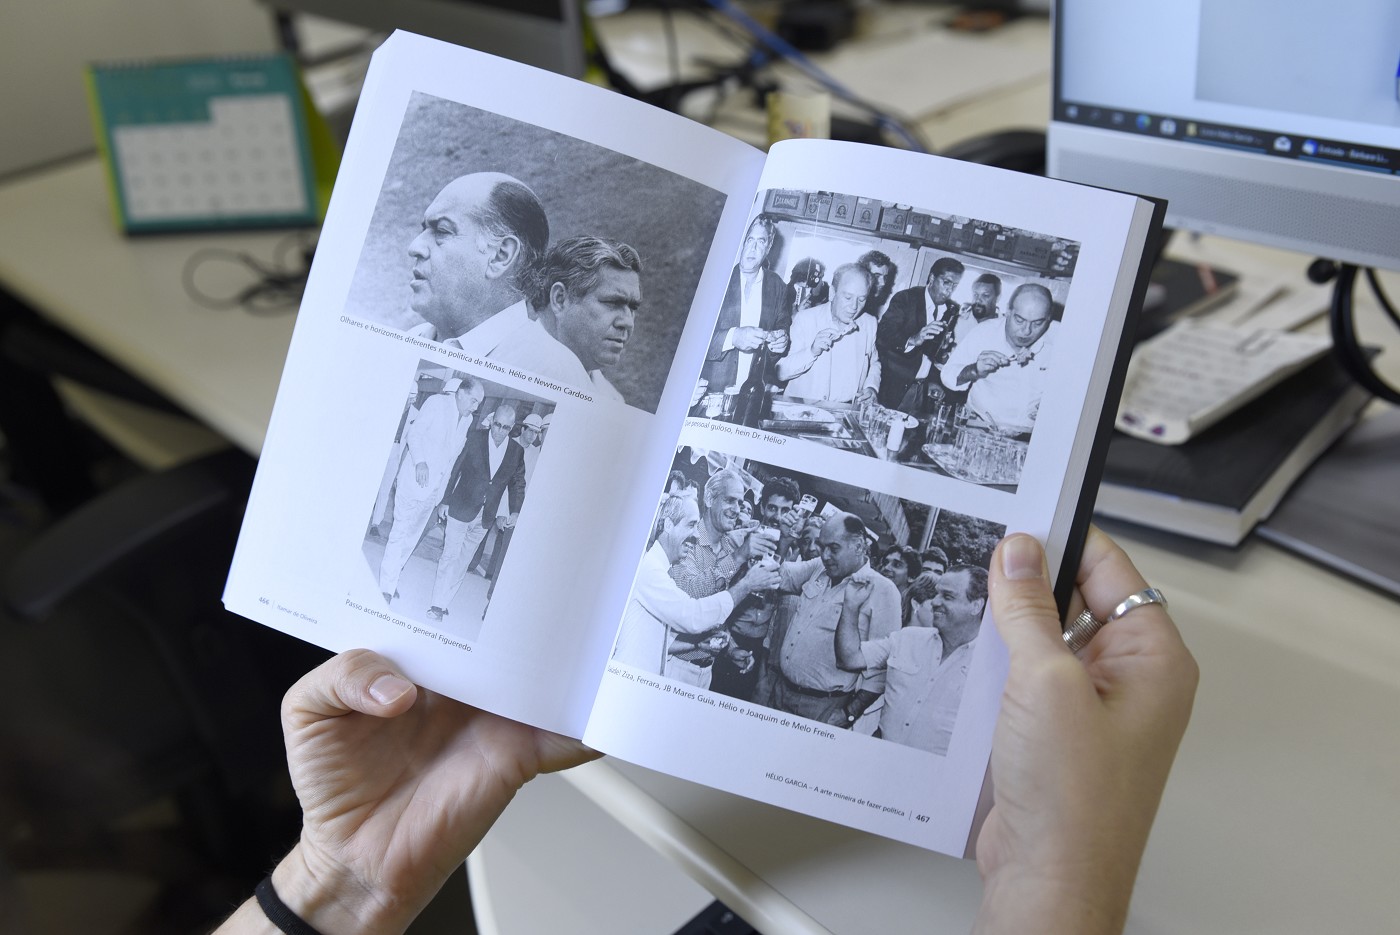 Livro: Hélio Garcia - A arte mineira de fazer política